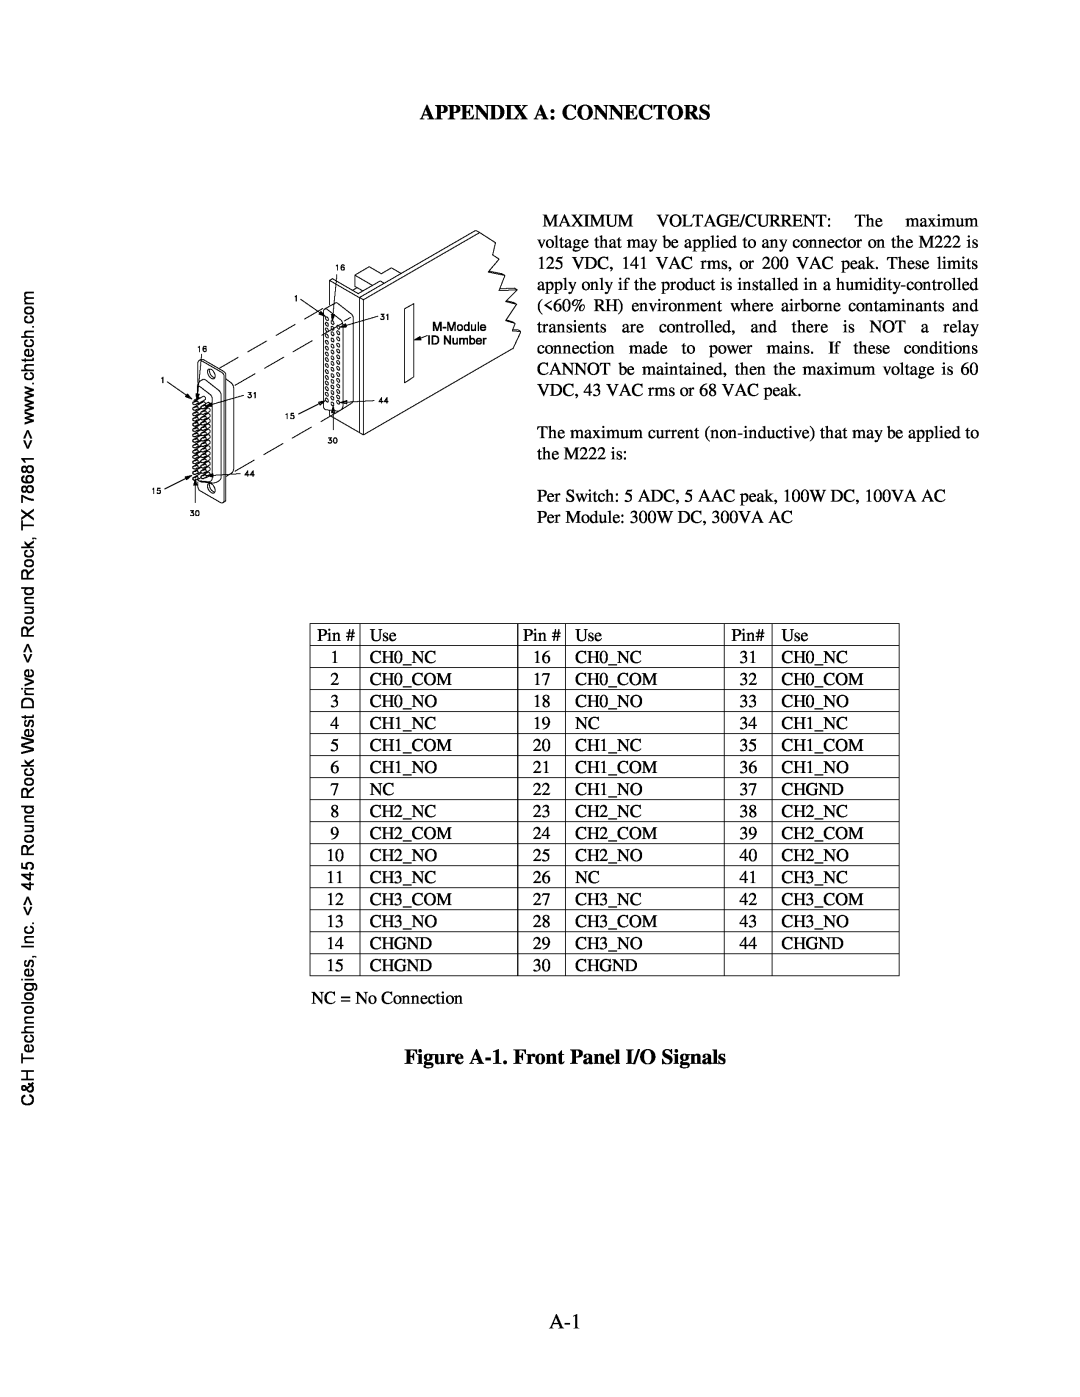 CH Tech M222 user manual Appendix A Connectors, Figure A-1. Front Panel I/O Signals 